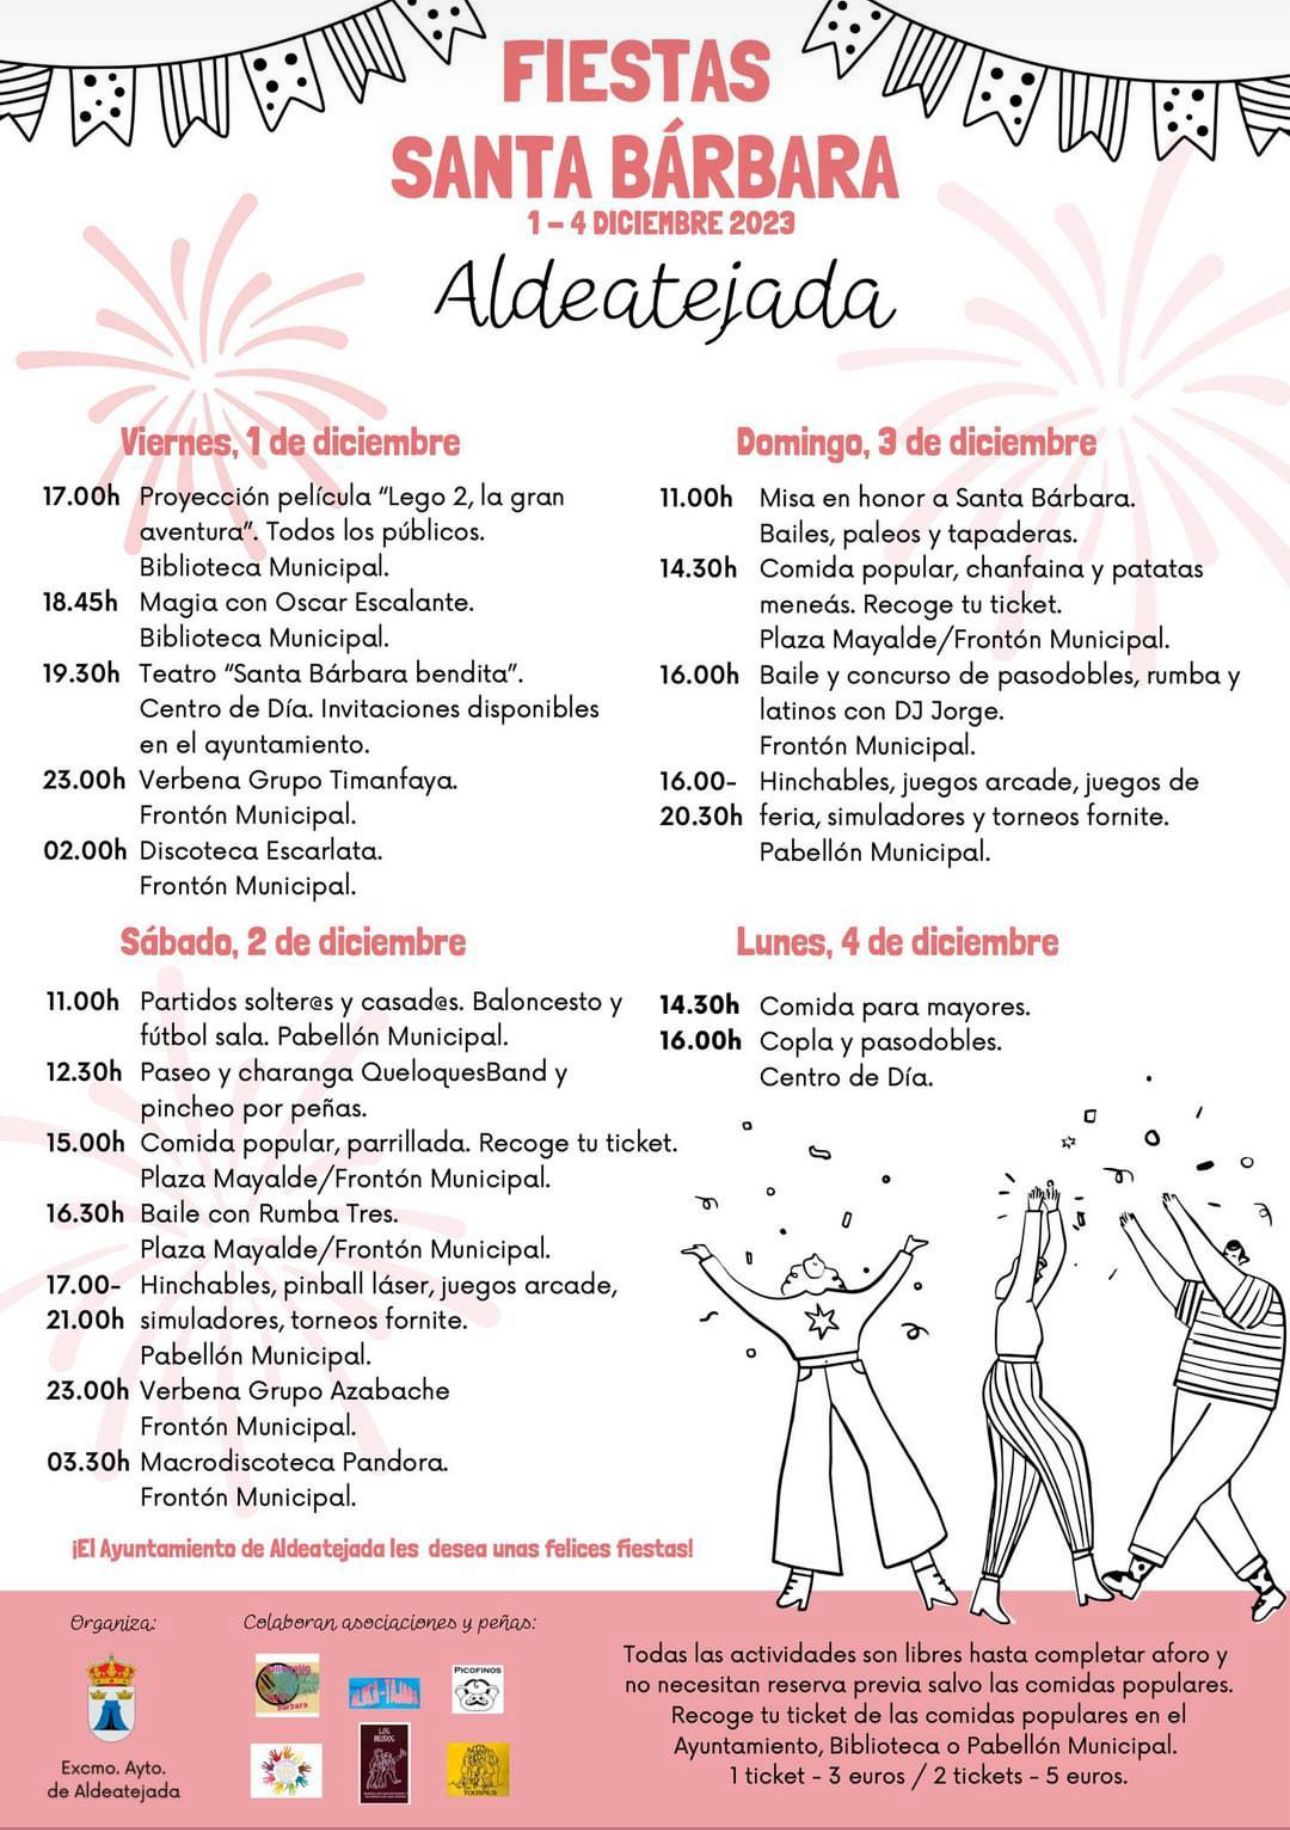 ALDEATEJADA/FIESTAS - Fiestas Santa Barbara